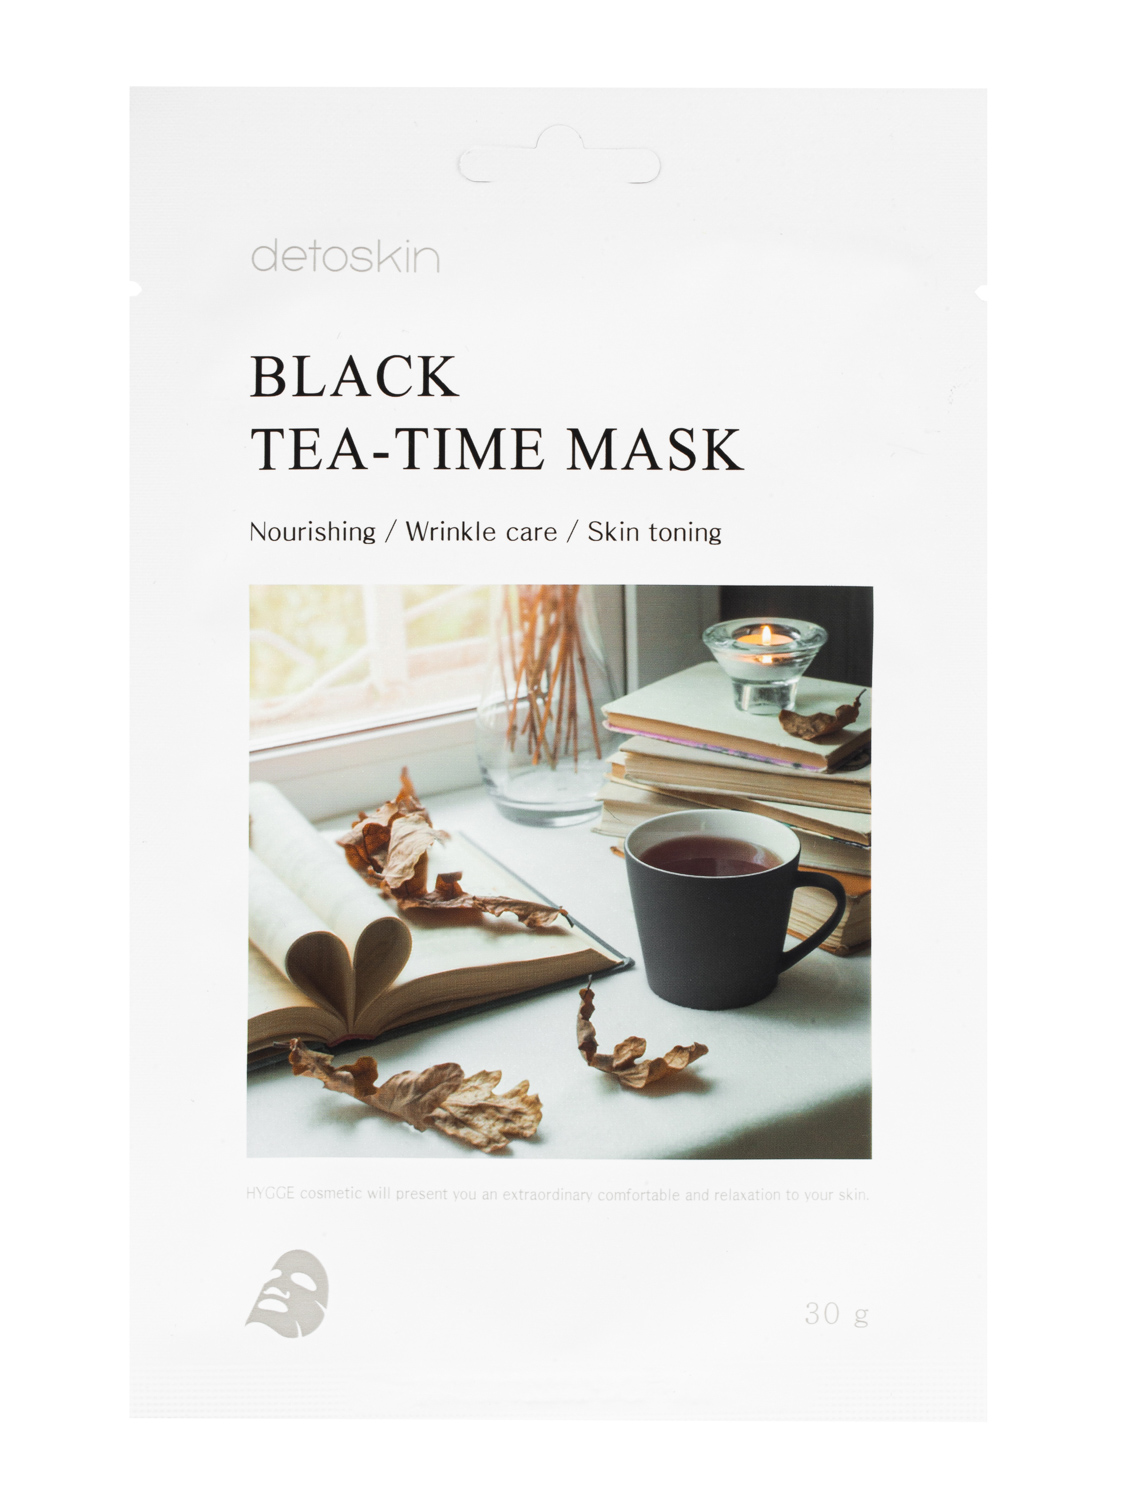 фото Омолаживающая и тонизирующая тканевая маска detoskin с экстрактом черного чая. корея 30ml